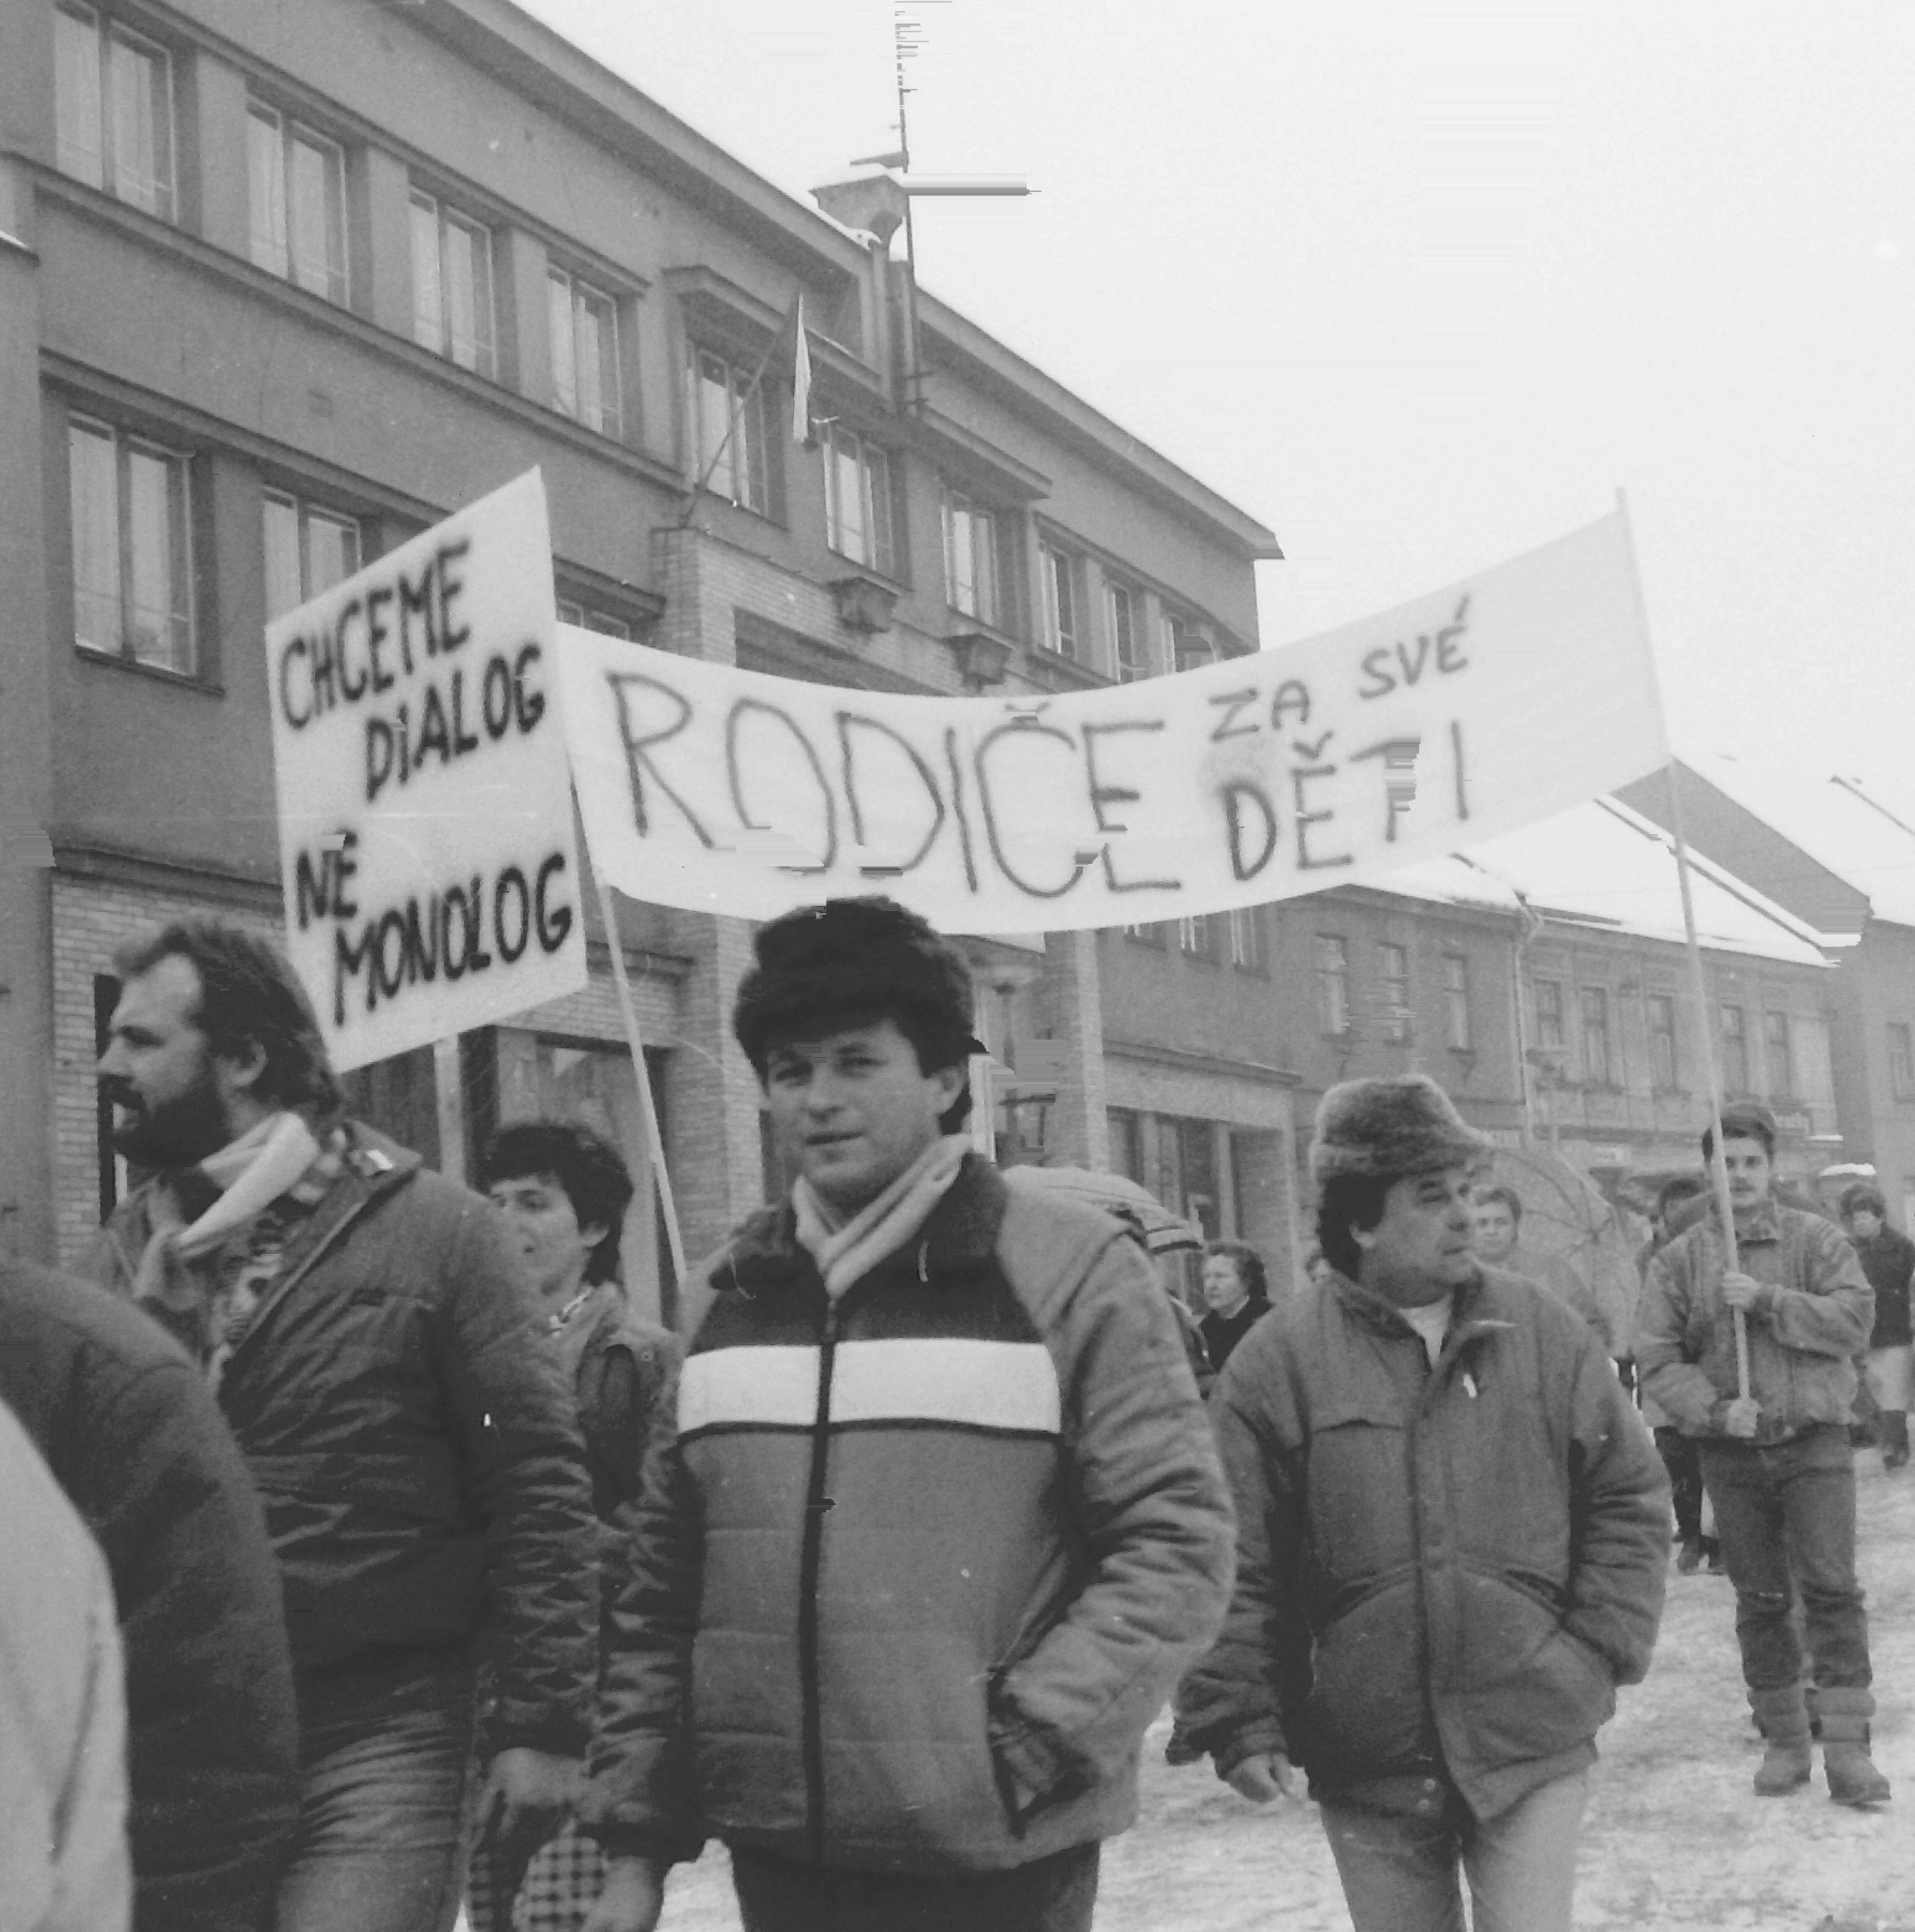 A film by Jindřich Souček from the general strike in Český Dub, November 27, 1989